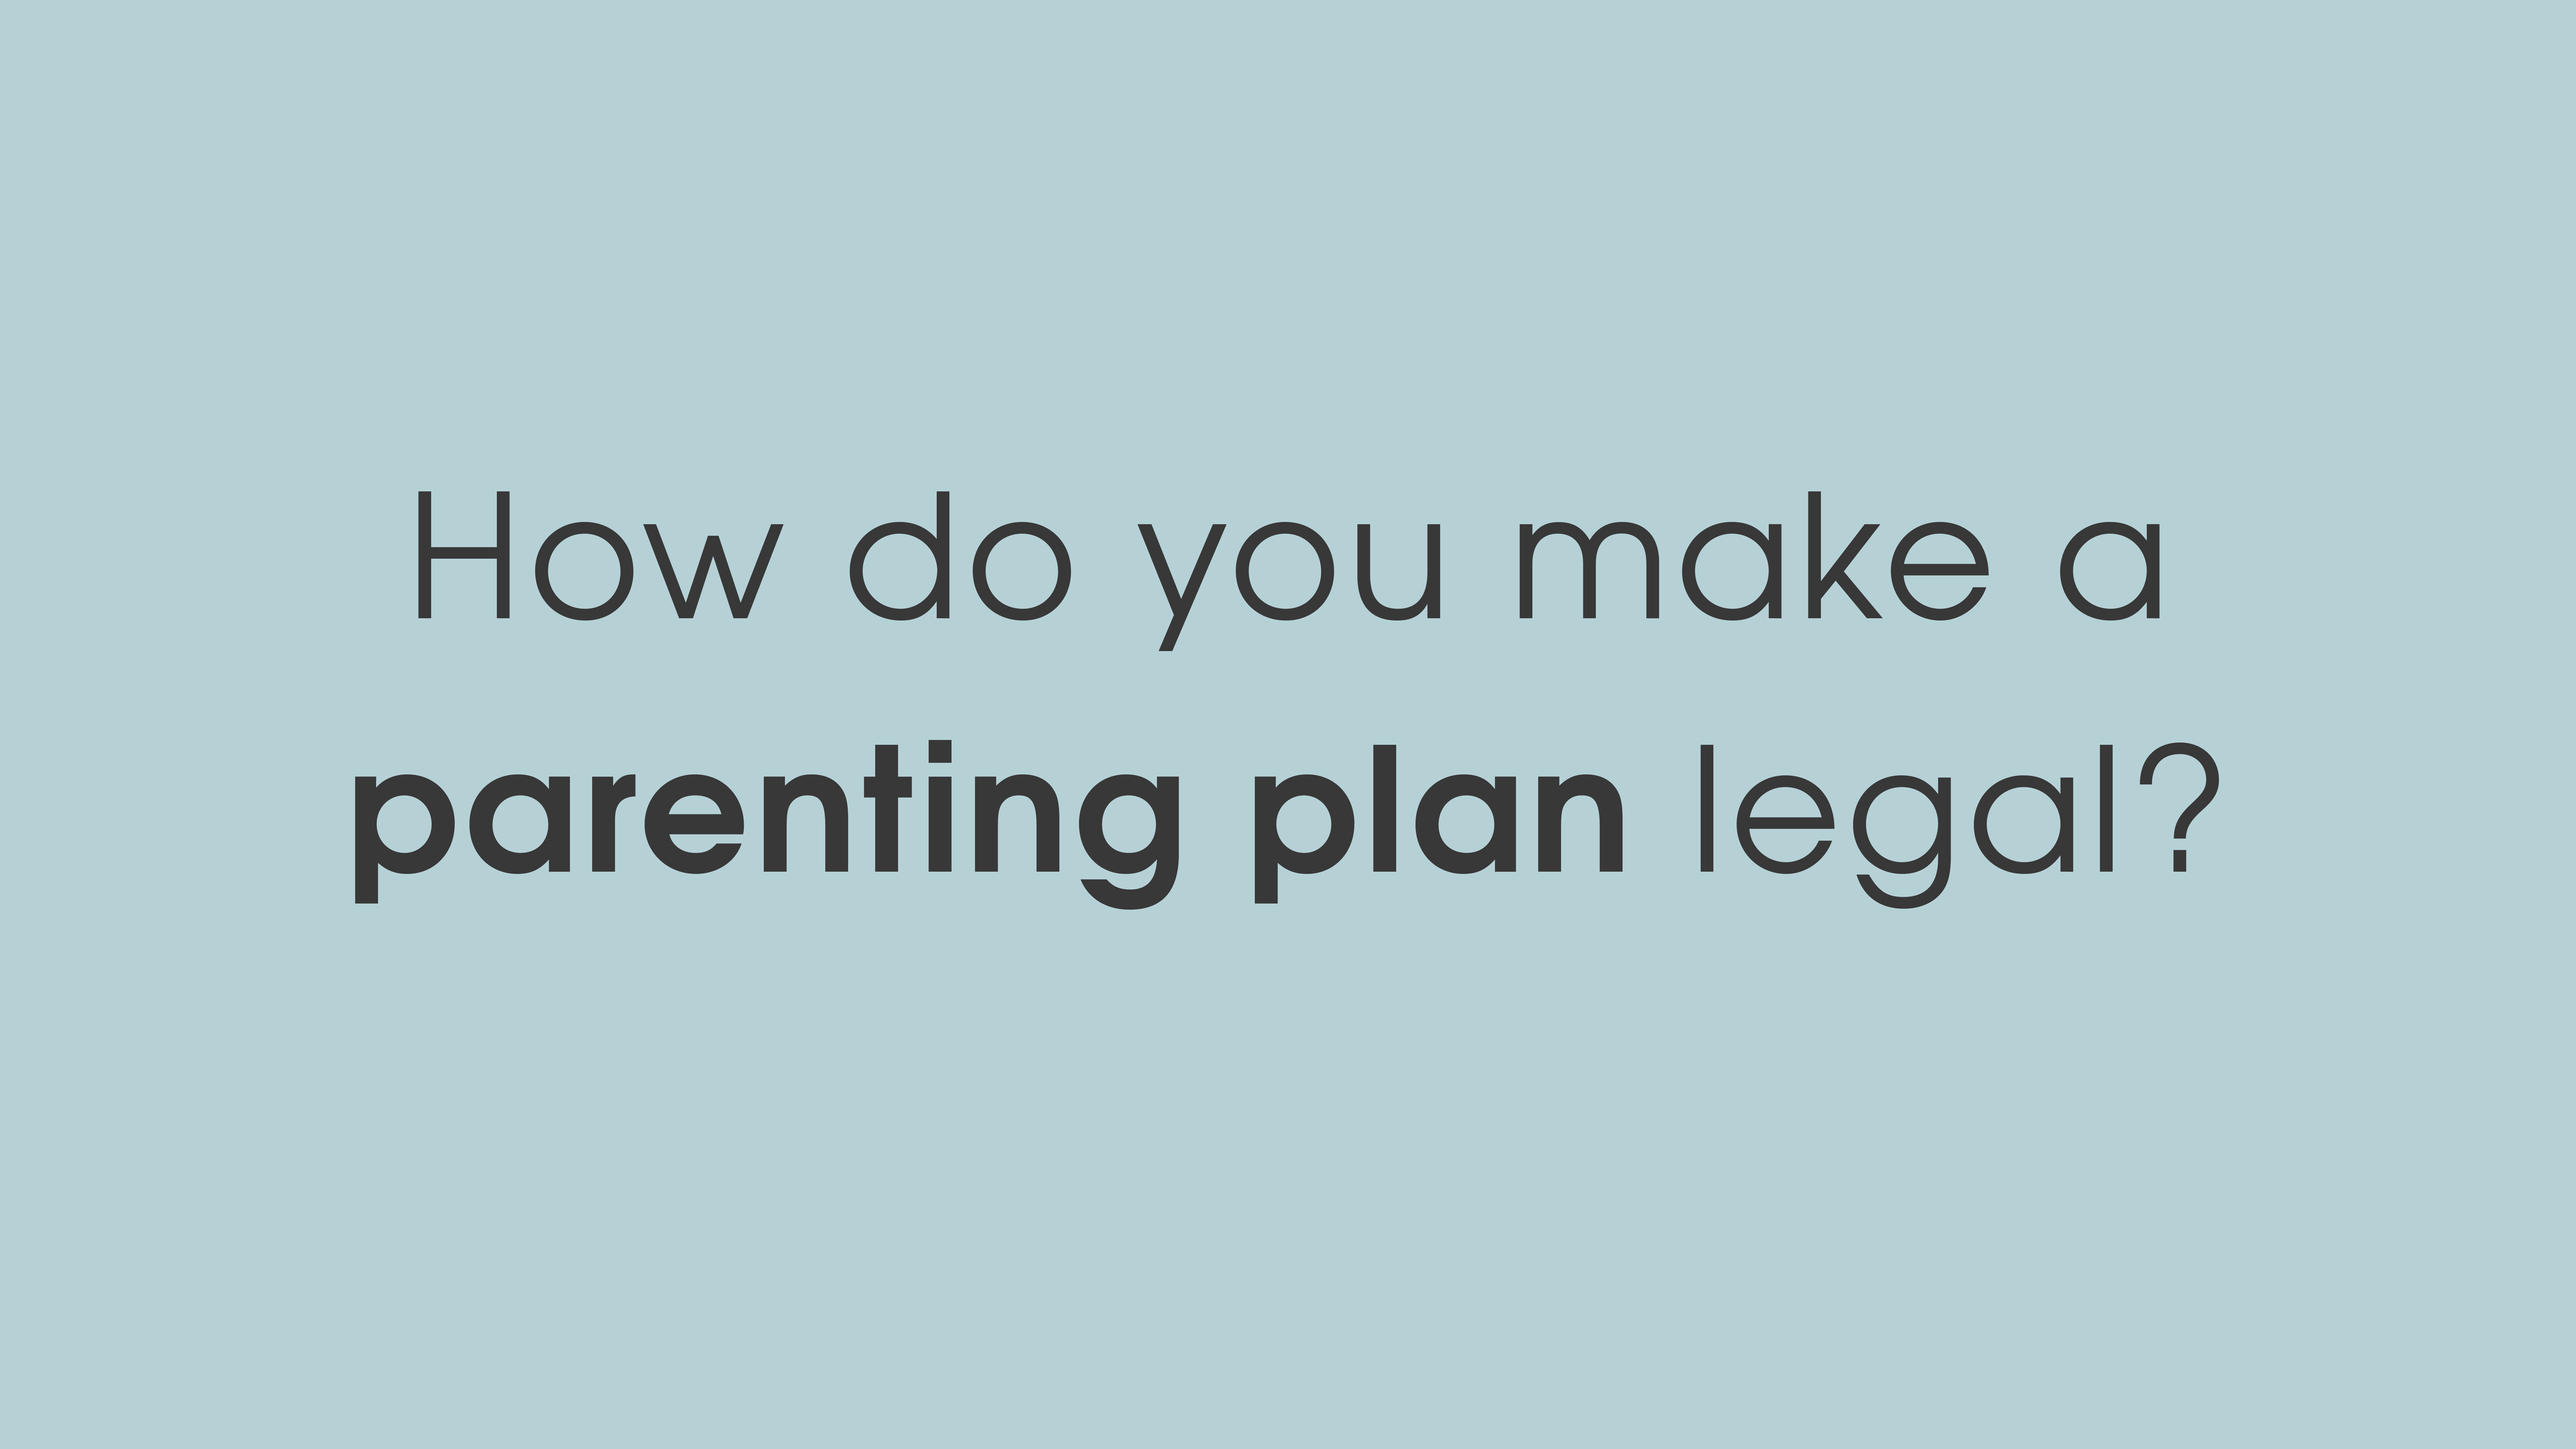 How do you make a parenting plan legal?